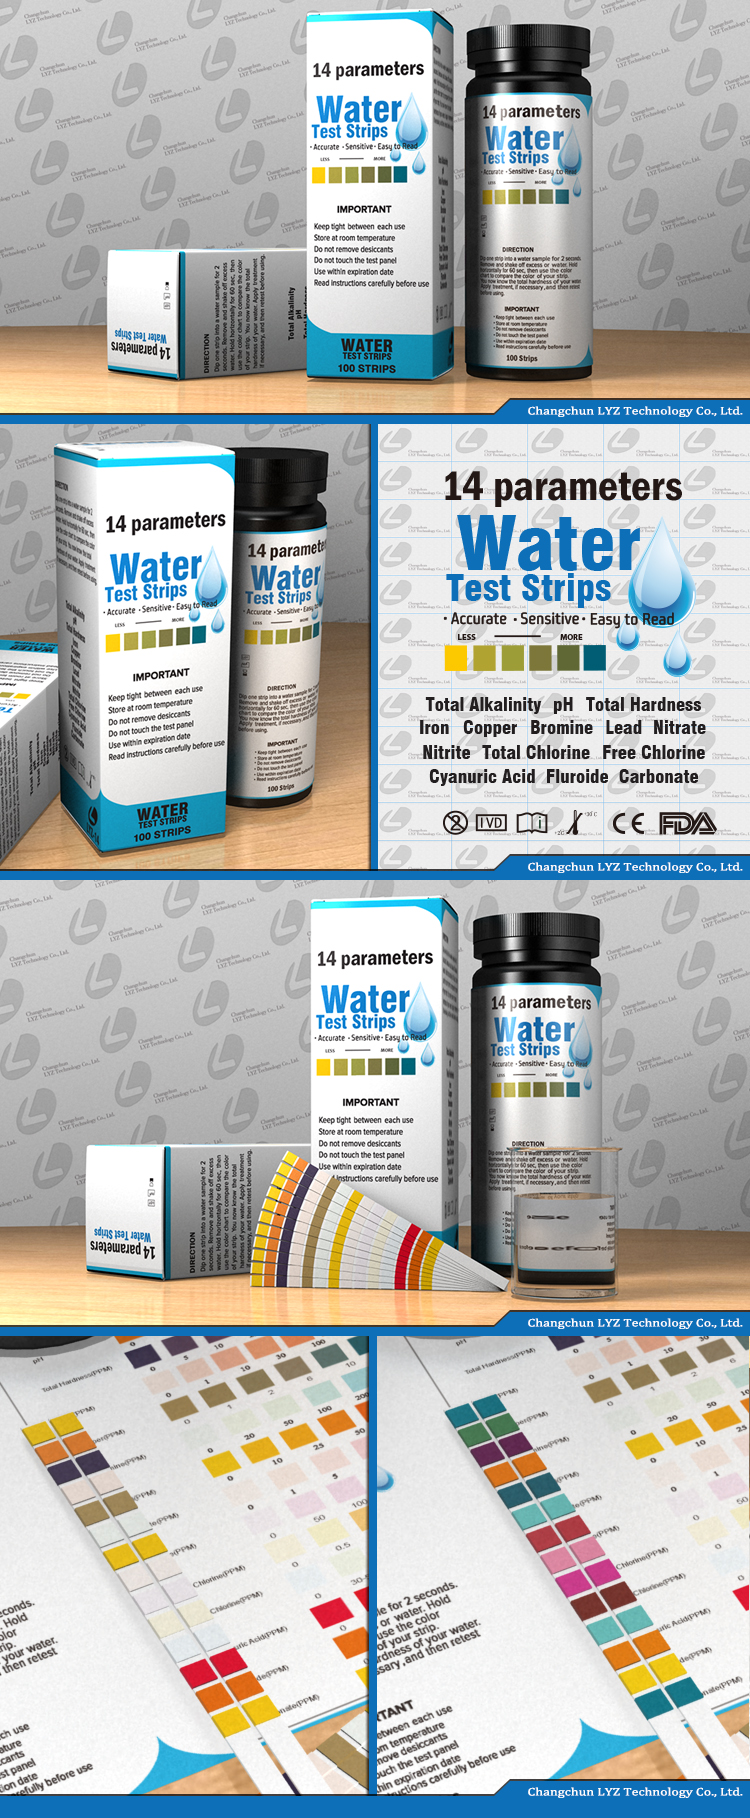 water test kits